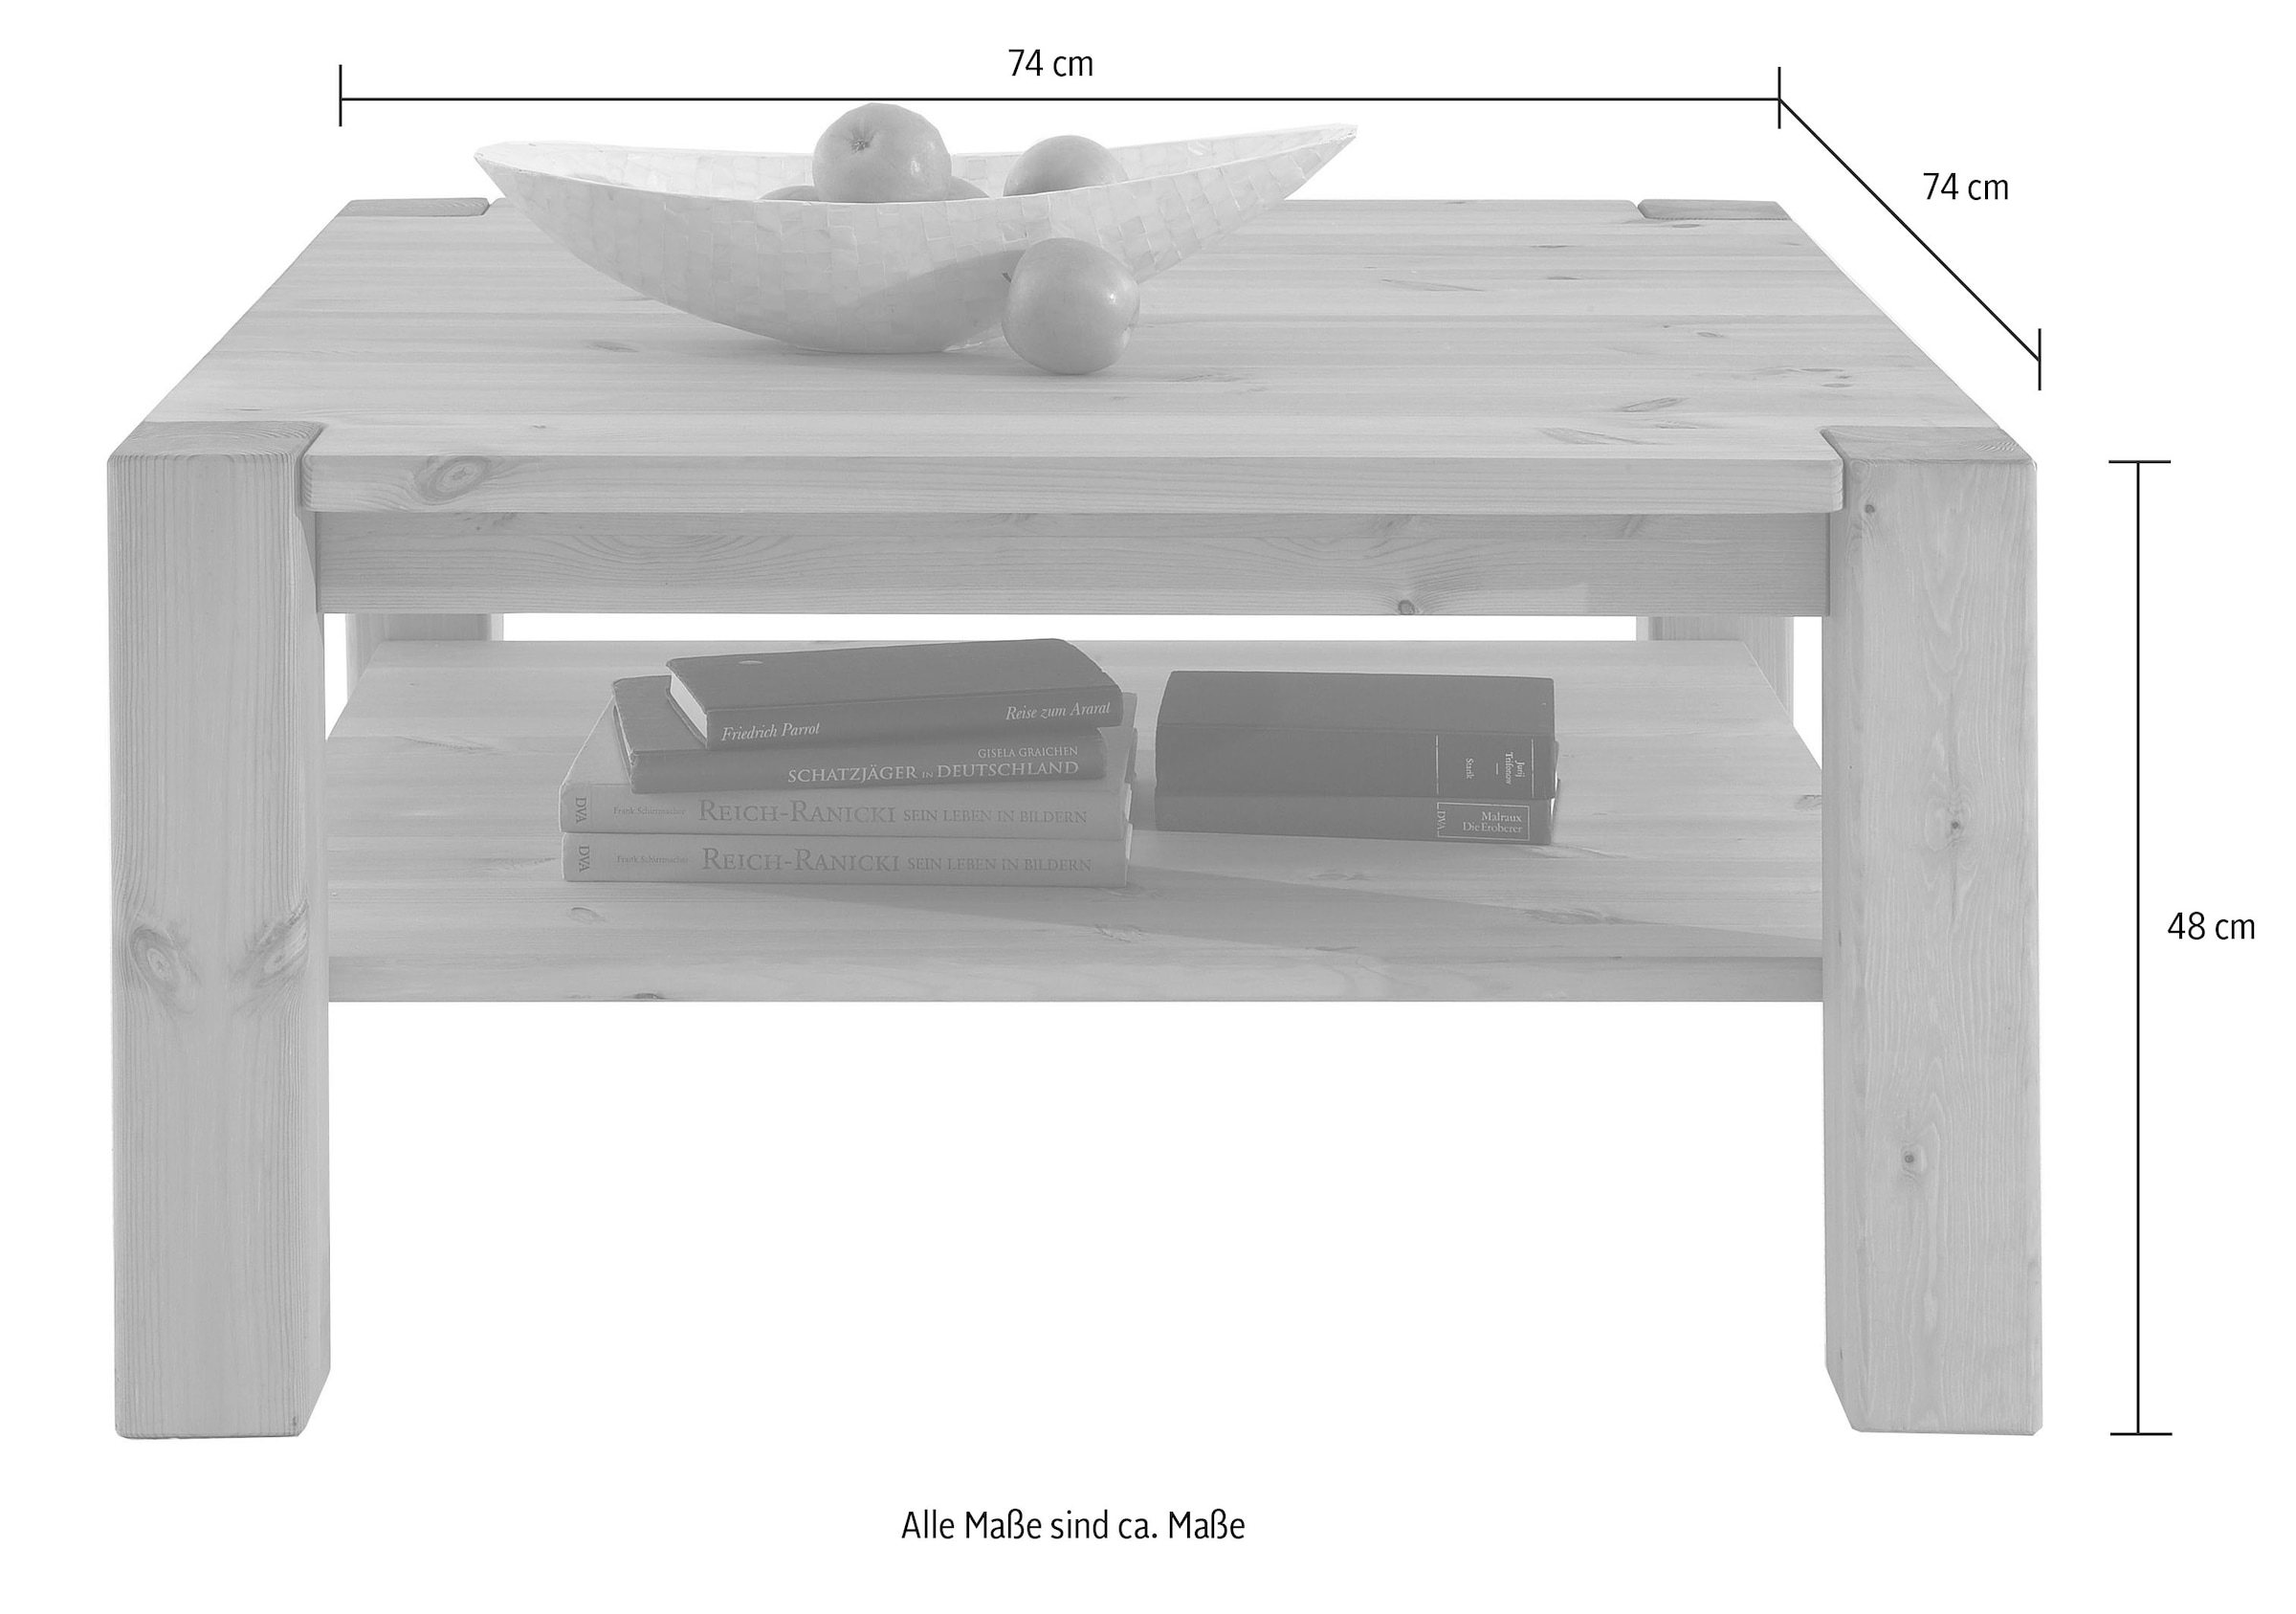 Landhausstil by cm, | 74 »Vita«, Tisch, Infantil massiv, Couchtisch Breite UNIVERSAL Wohnglücklich Kiefer kaufen